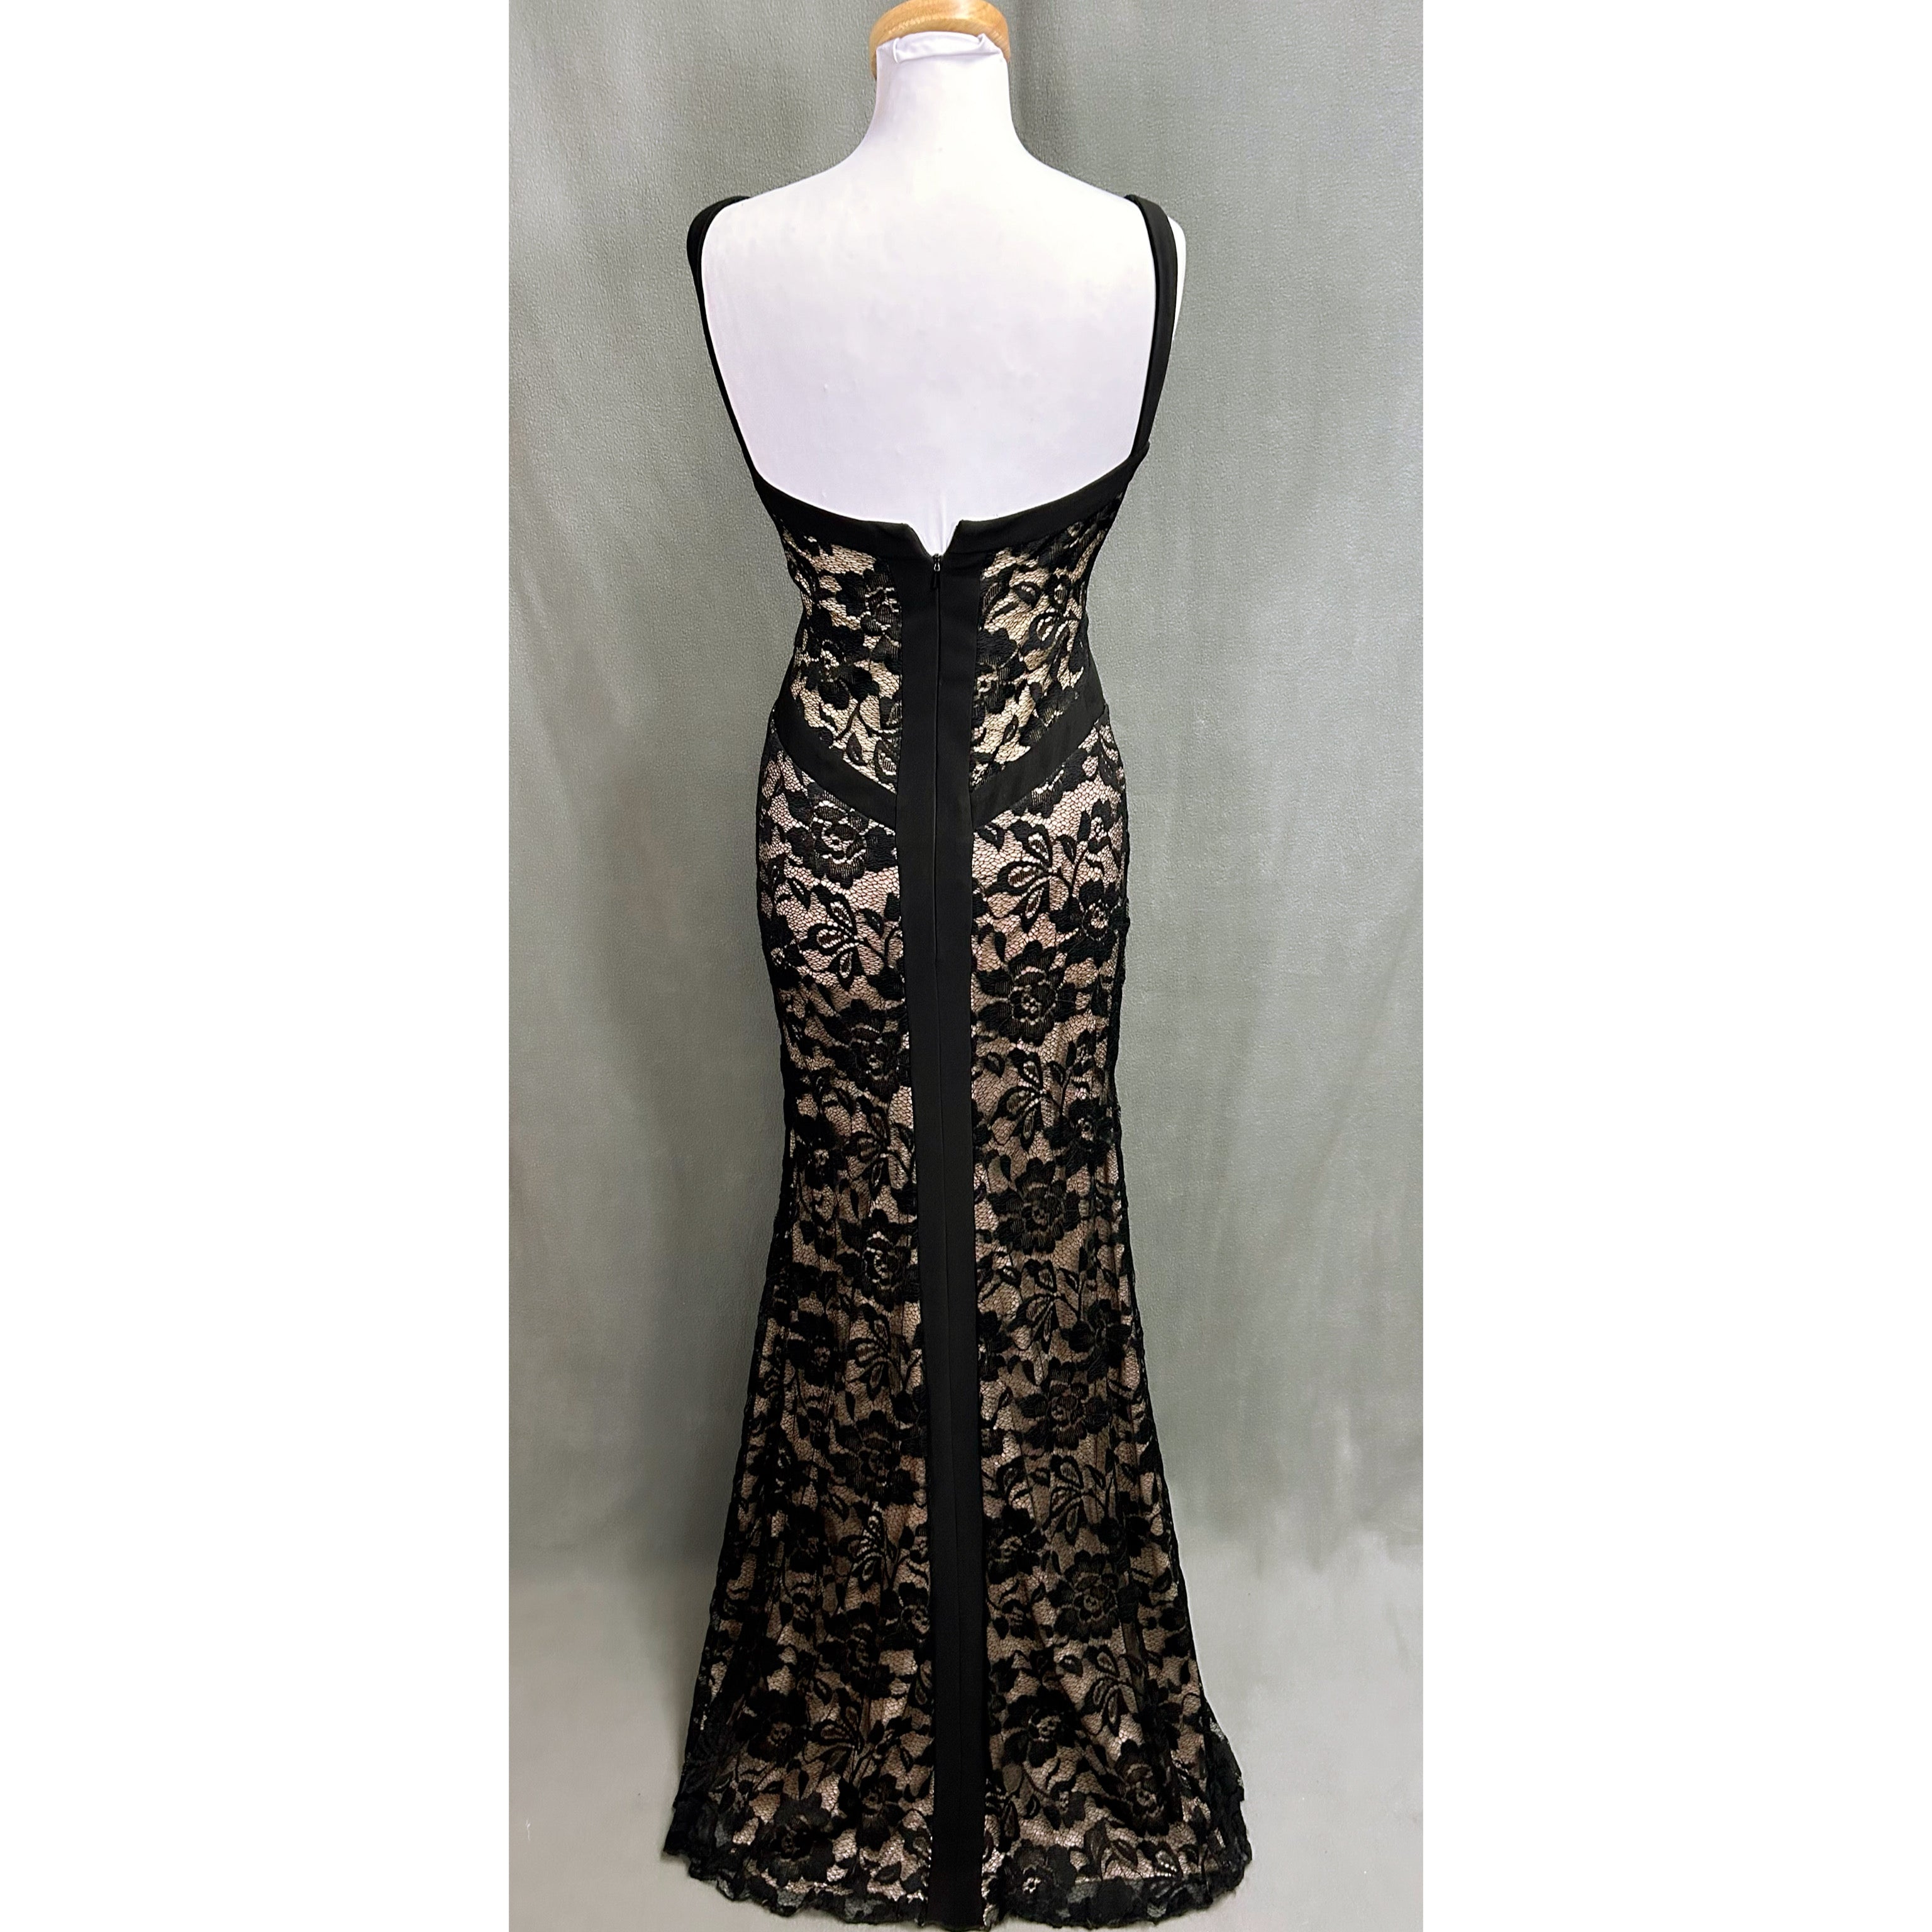 Mori Lee black lace dress, size 7/8